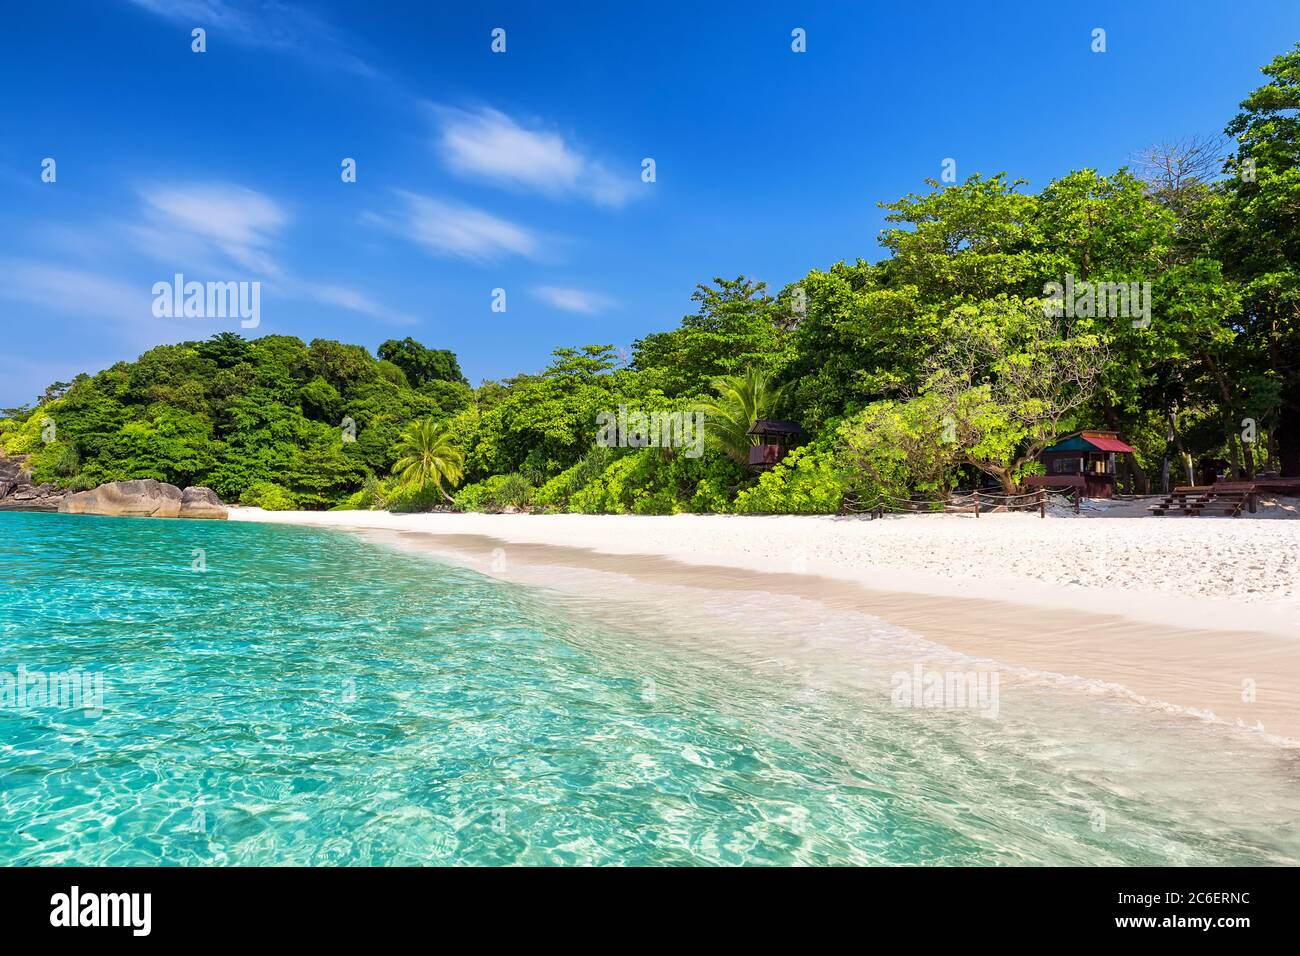 Kokospalmen gegen blauen Himmel und schönen Strand in Similan Insel, Thailand. Urlaub Urlaub Urlaub Hintergrund Wallpaper. Blick auf schöne tropische Ba Stockfoto